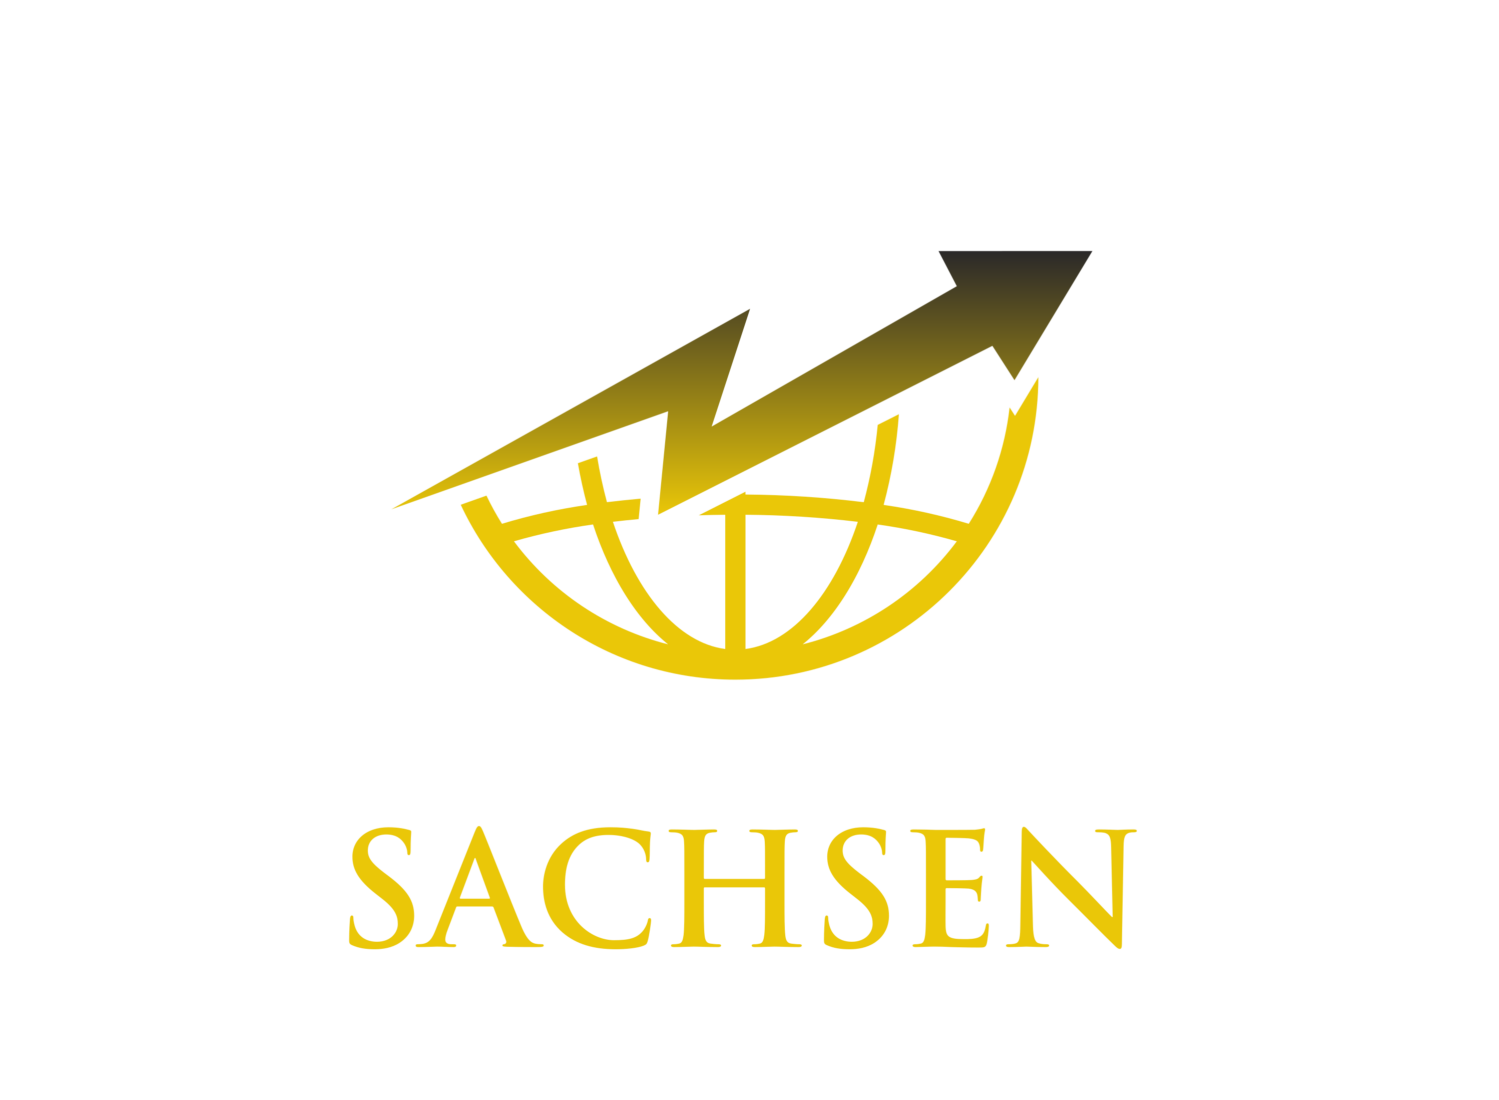 Digitalisierungsagentur Sachsen